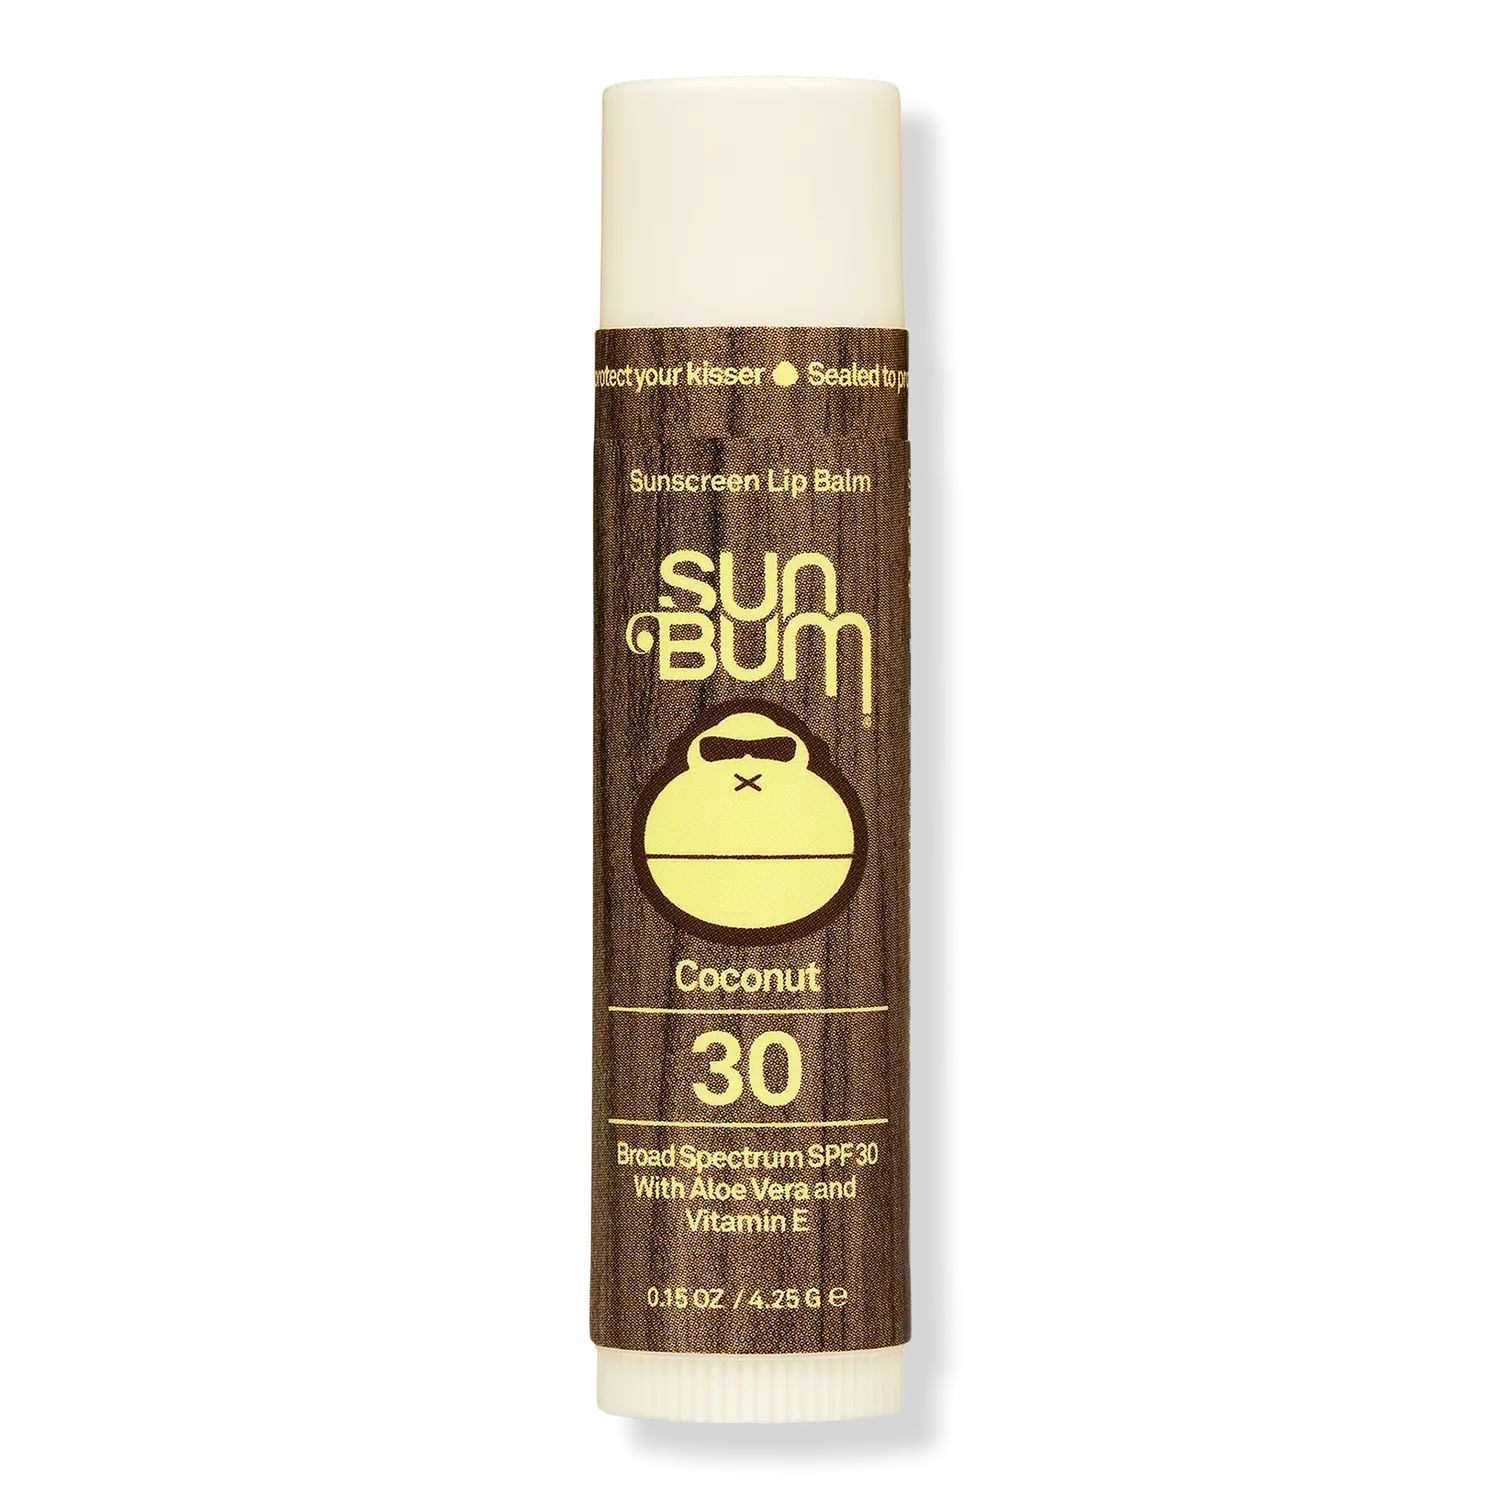 Sunscreen Lip Balm SPF 30 | Ulta